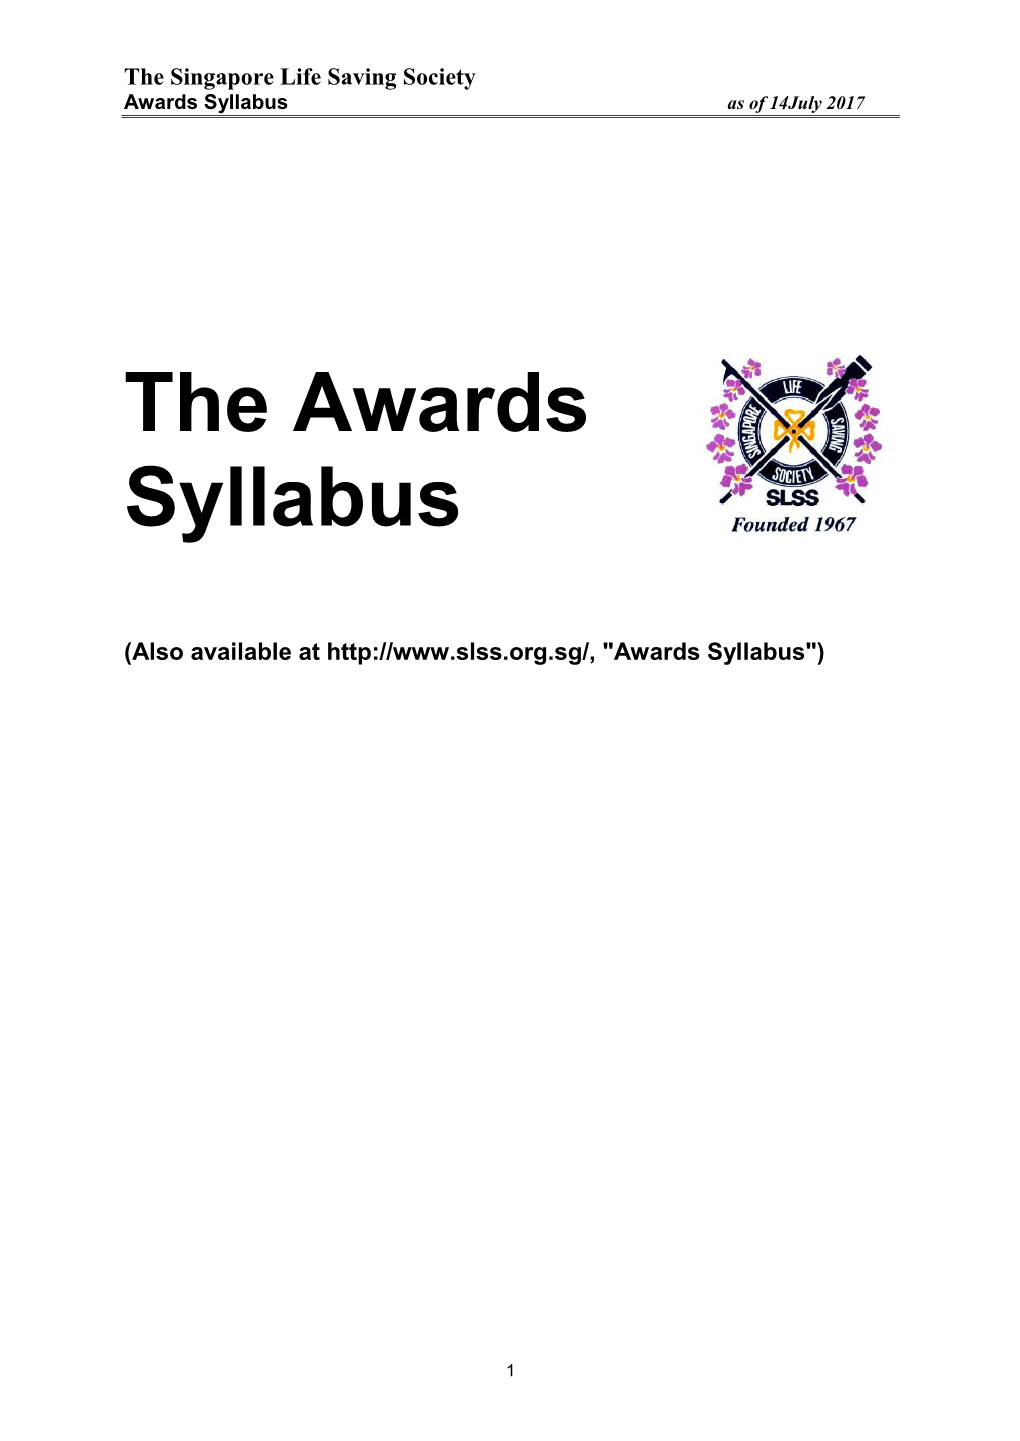 The Awards Syllabus